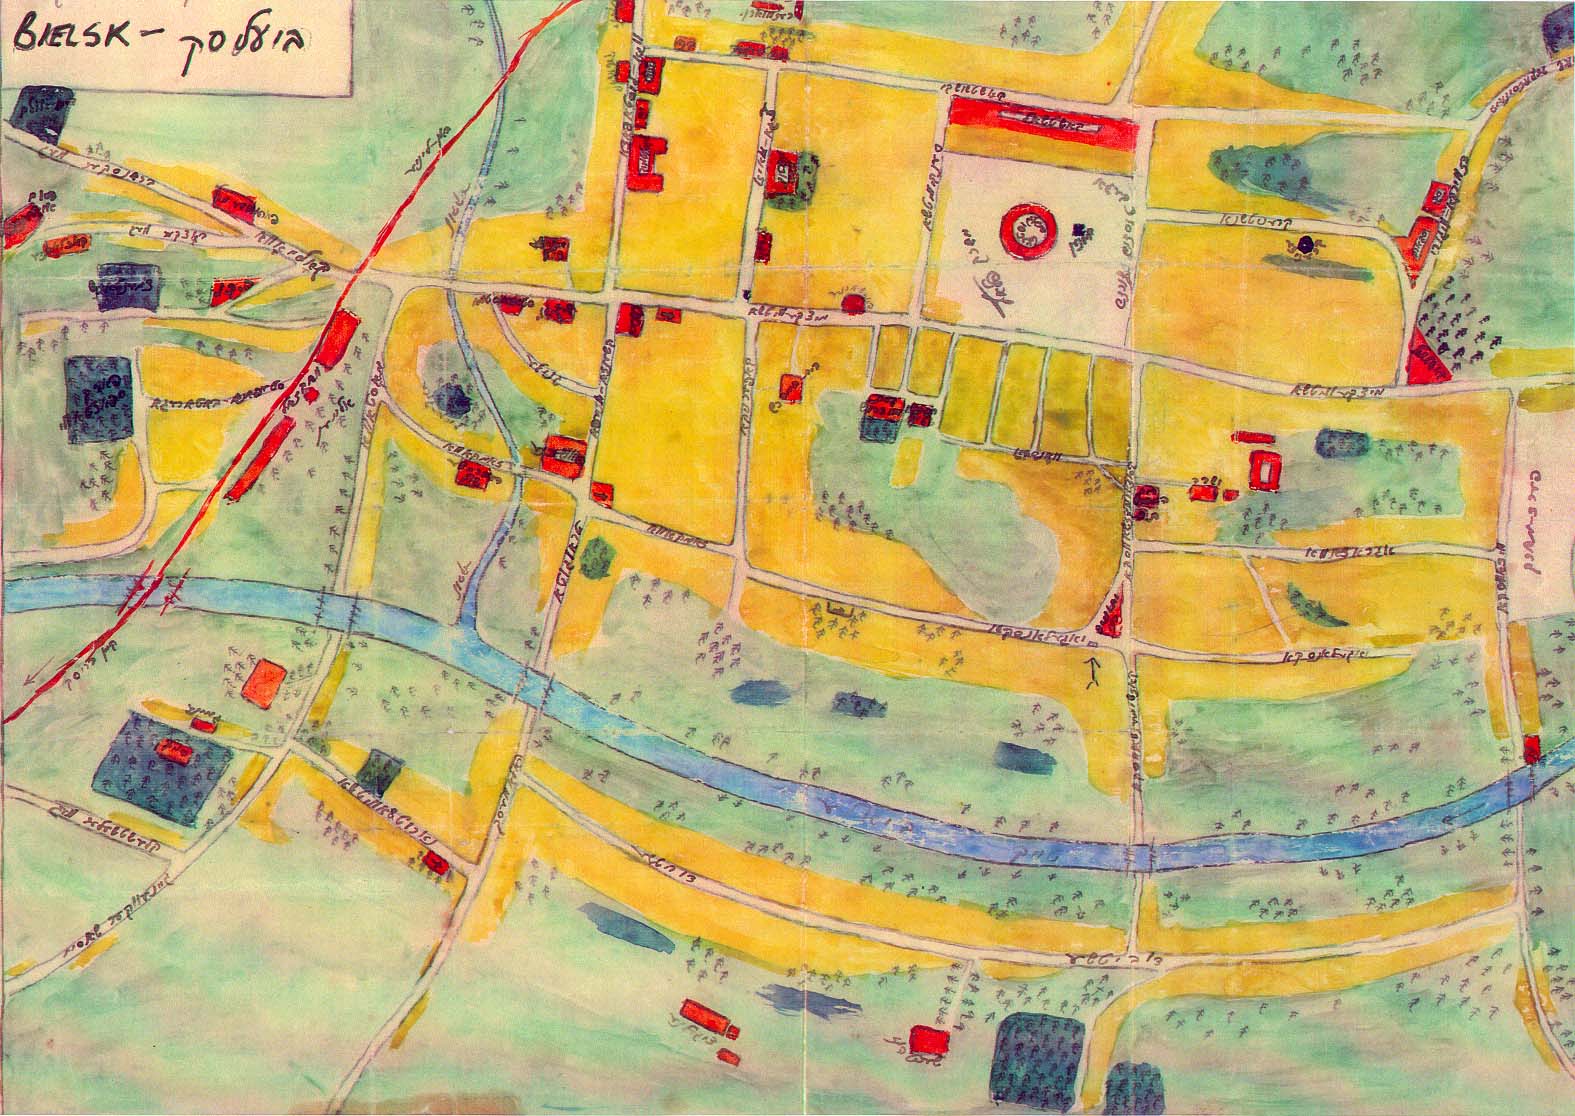 Hand drawn water color map of Bielsk Podlaski by Libe and Bashe Kleszczelski